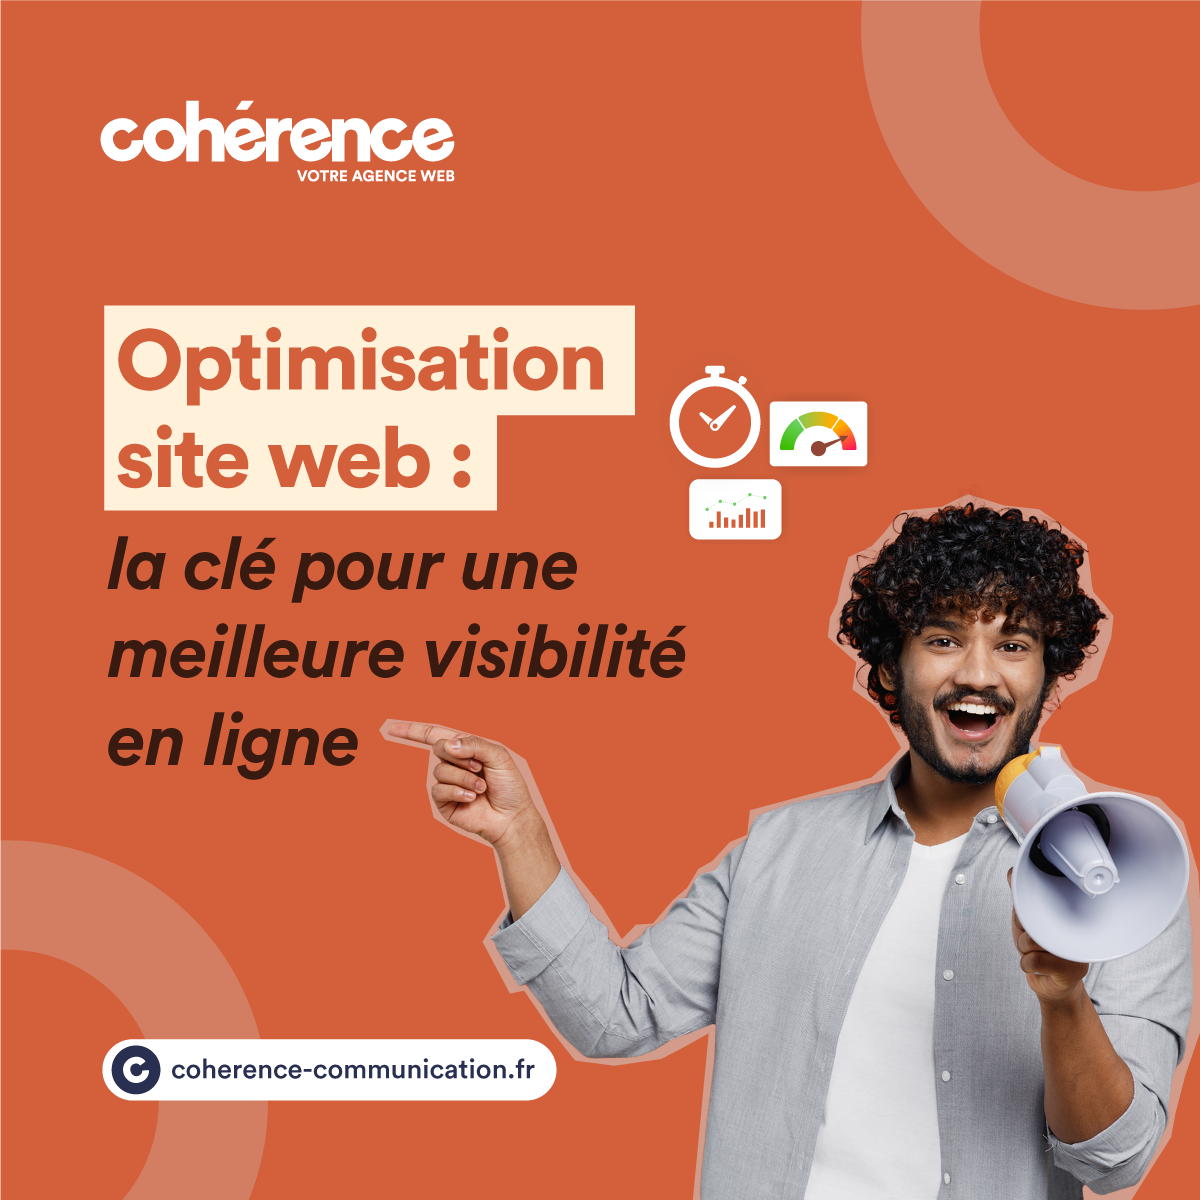 Coherence Agence Web Optimisation Site Web La Cle Pour Une Meilleure Visibilite En Ligne